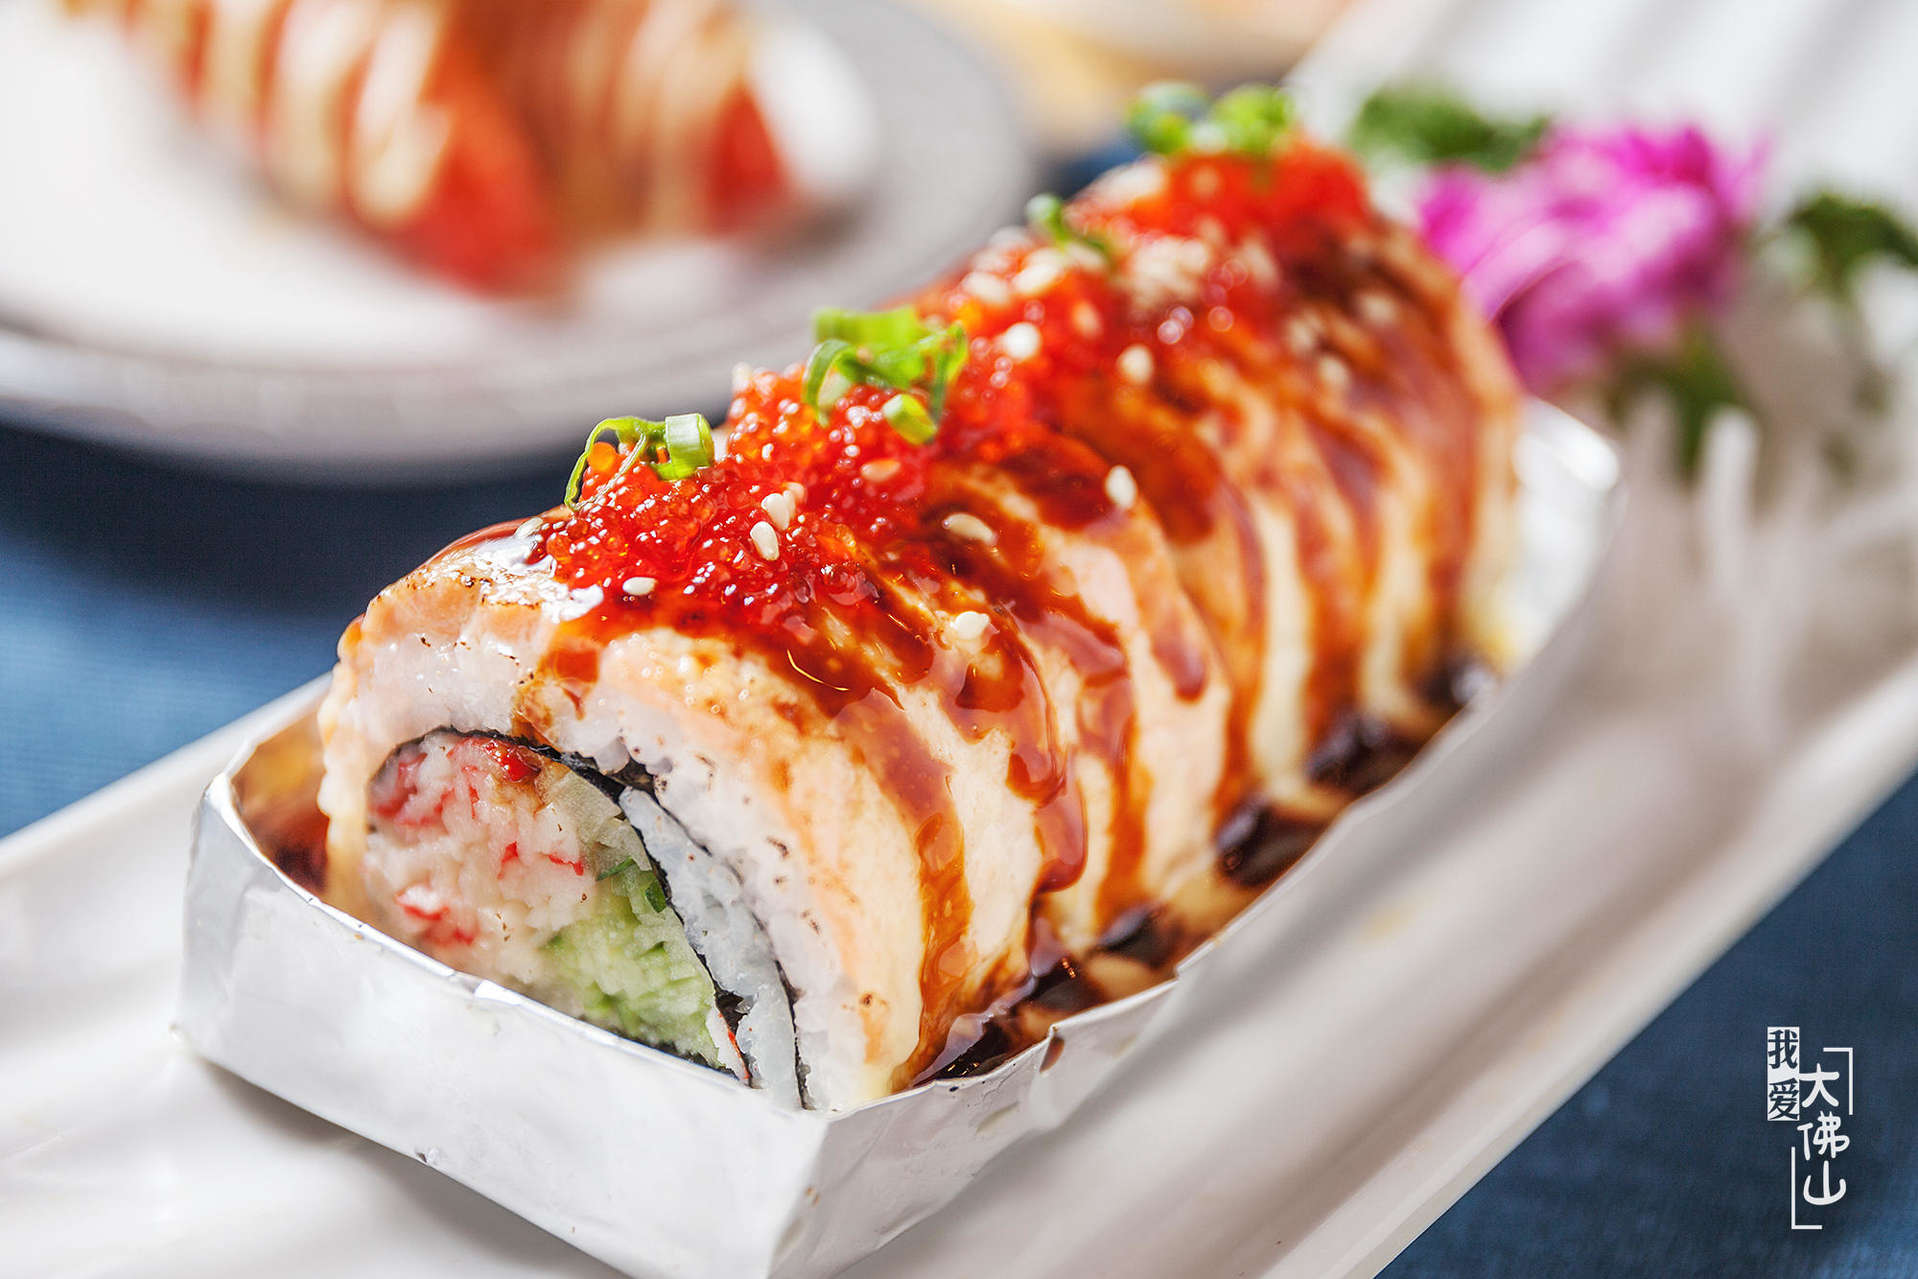 人均仅40!强烈谴责这家寿司店,4人套餐,小火锅,刺身竟然免费吃!